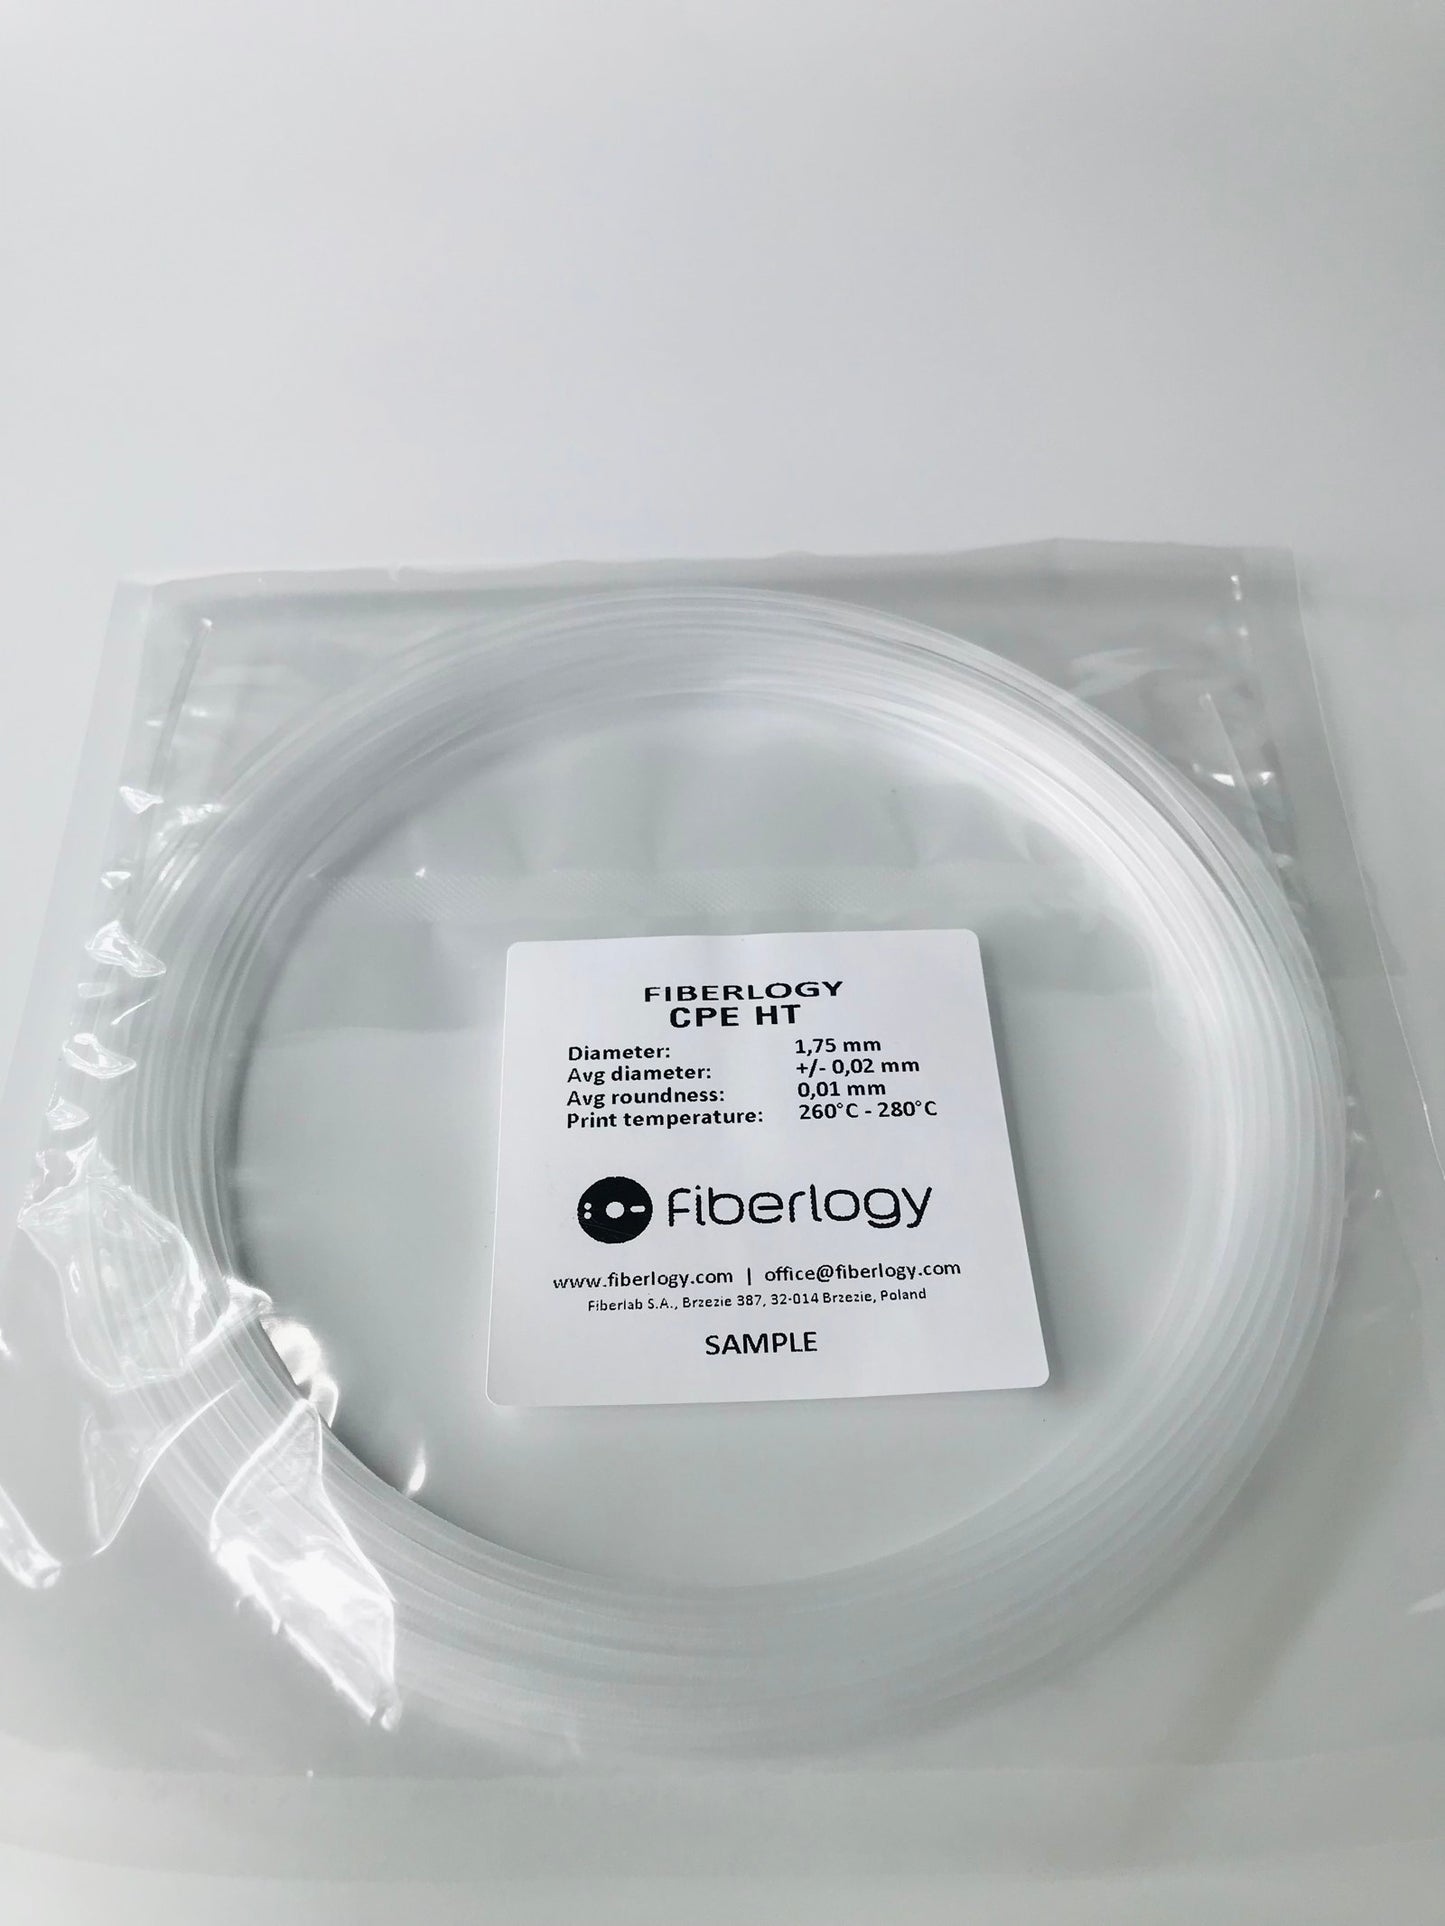 Fiberlogy CPE HT Food safe 3D printing filament sample size